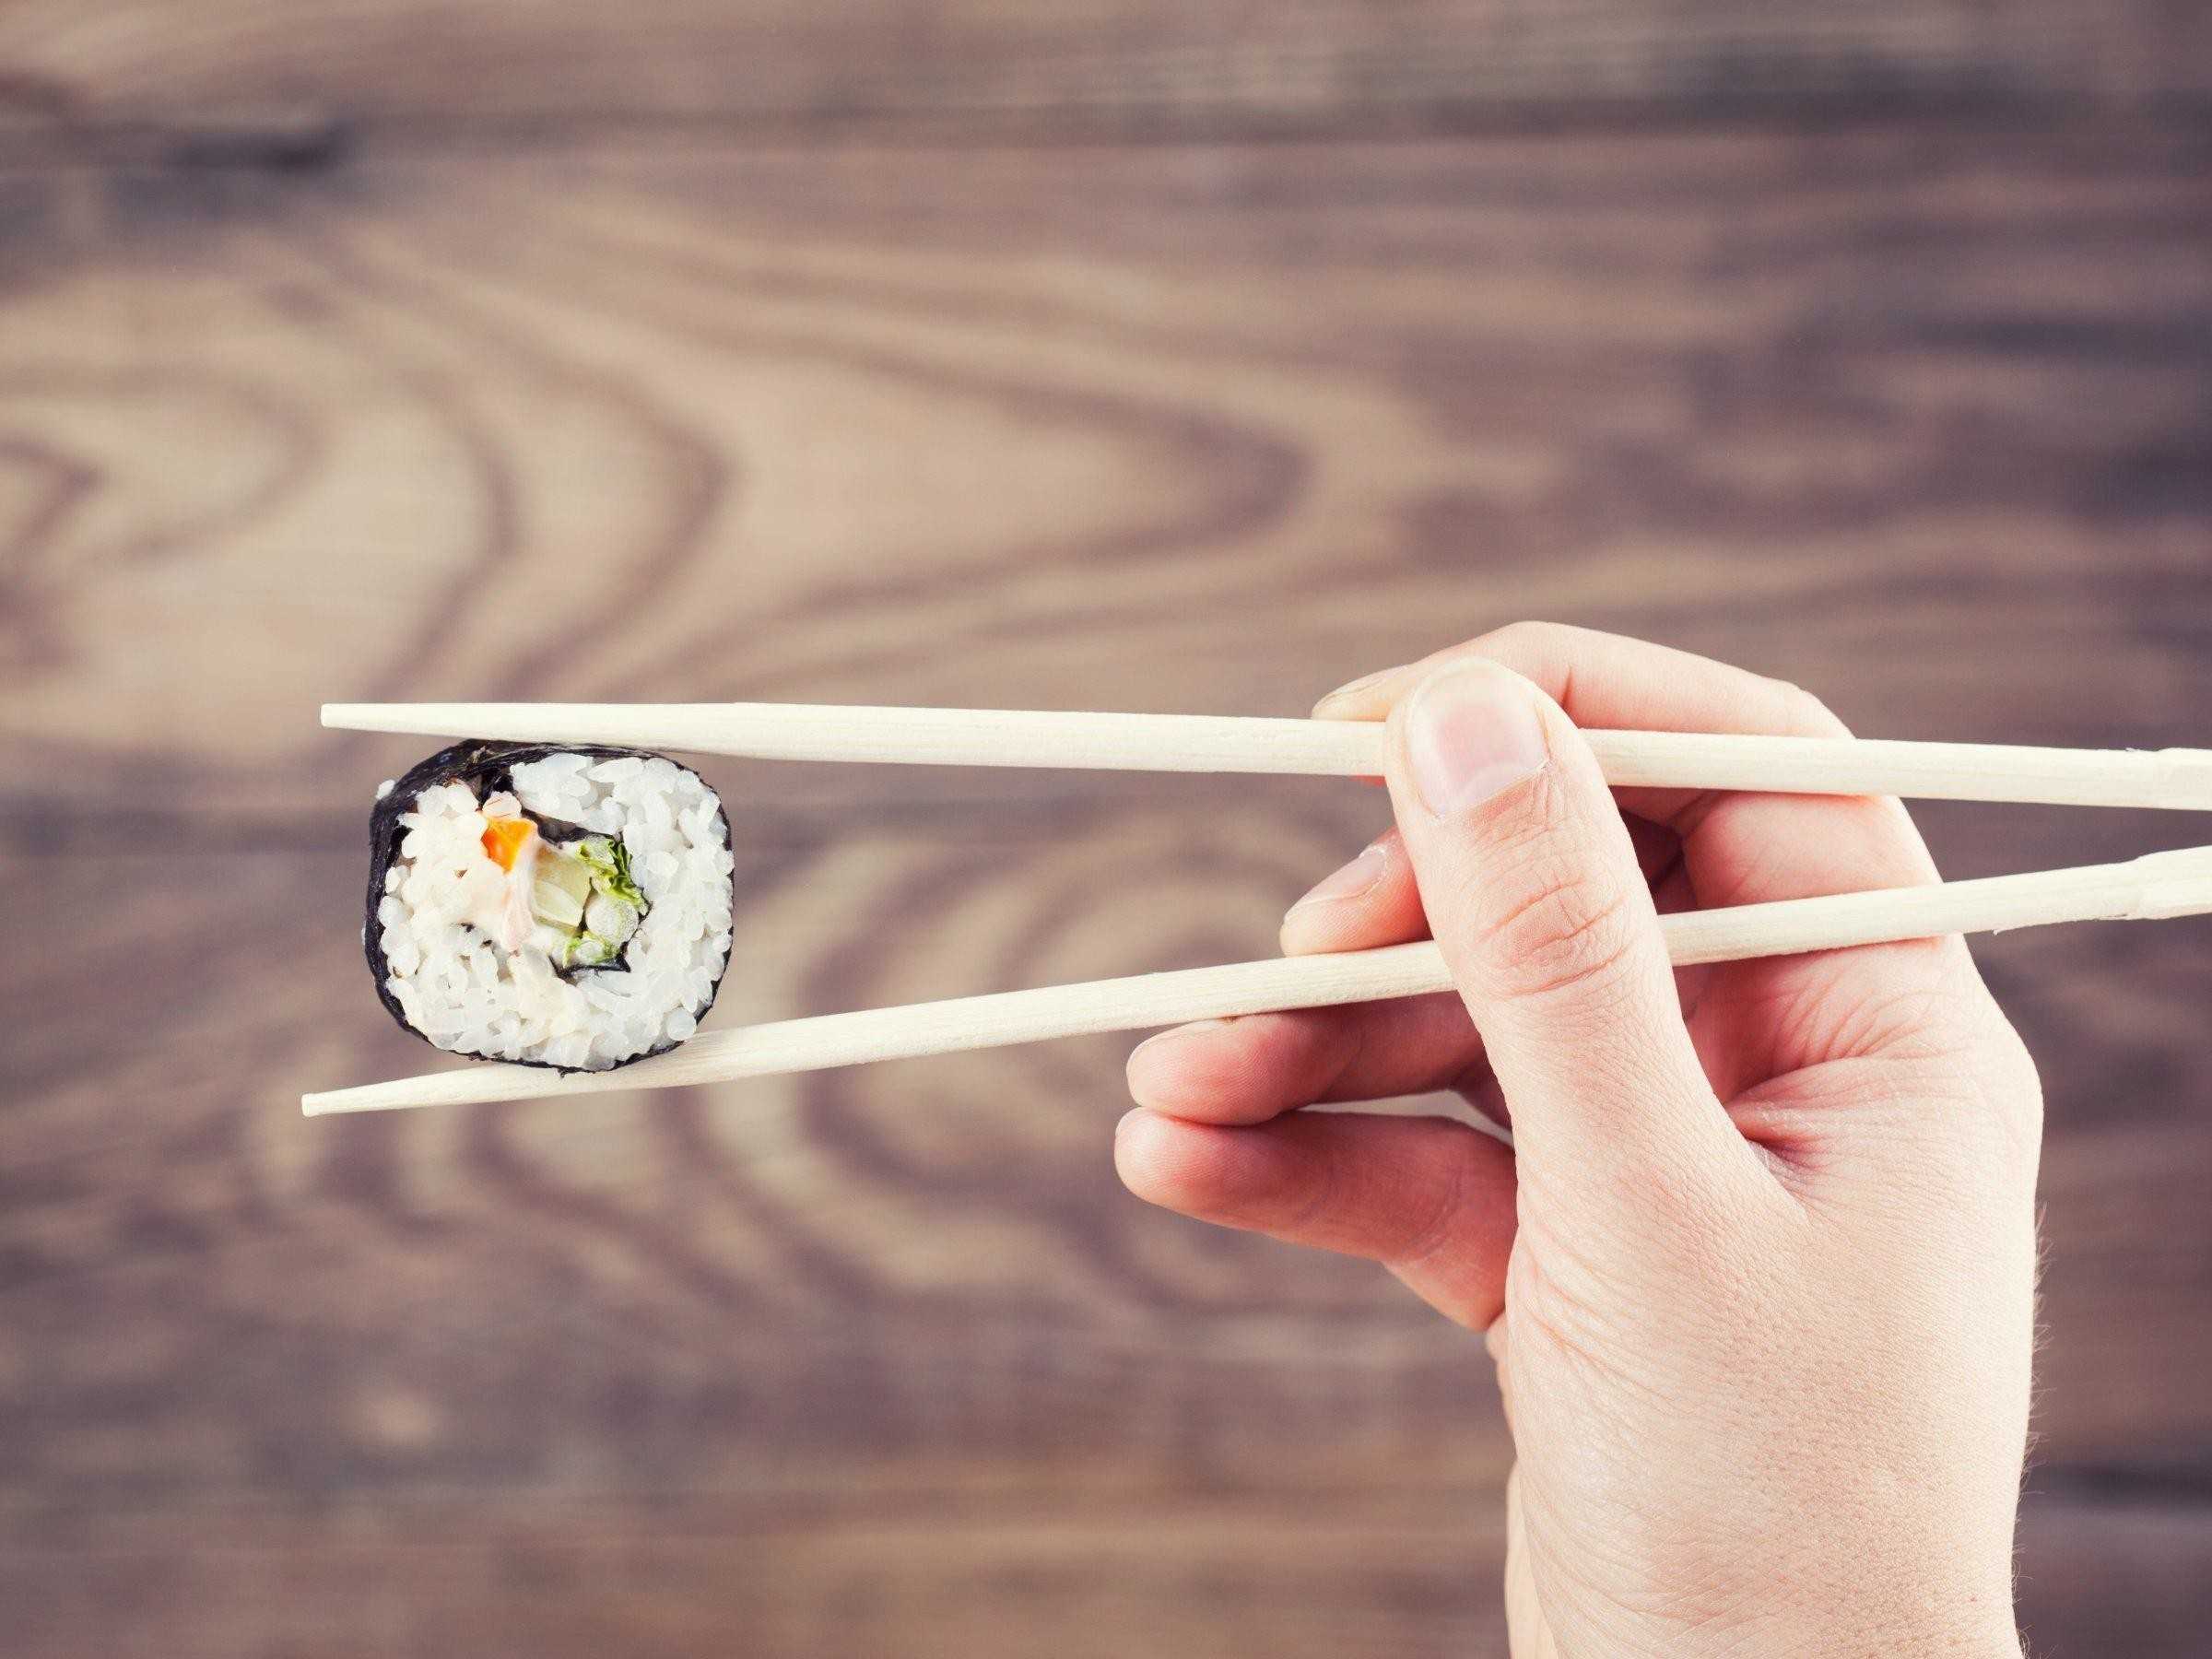 Почему суши едят палочками Виды палочек для суши Как научиться держать палочки Пошаговая инструкция использования палочек Что удобно и можно кушать китайскими палочками